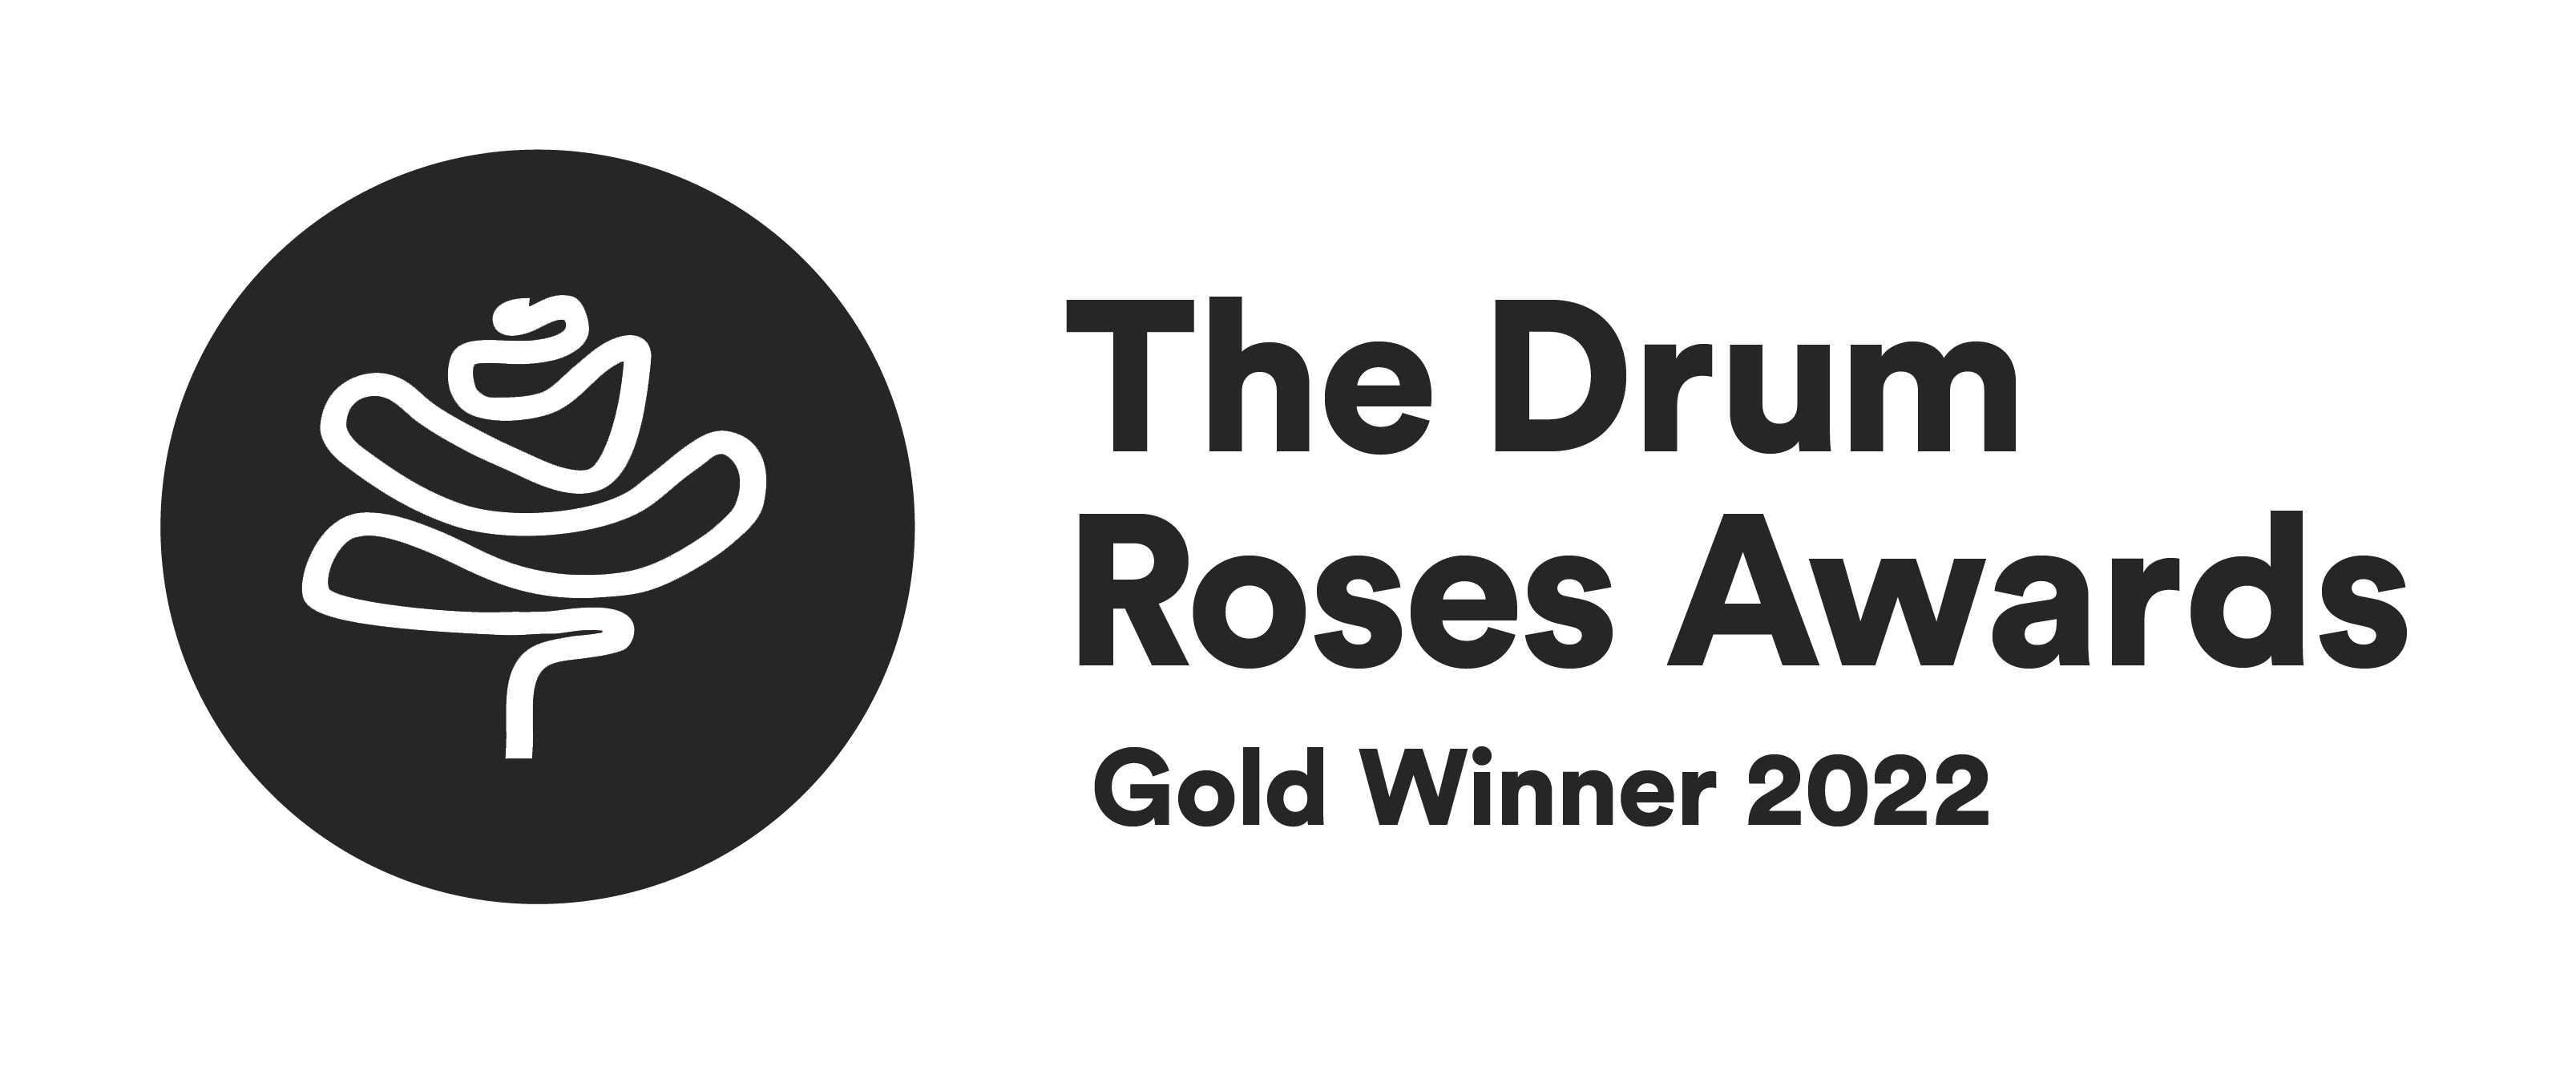 The Drum Roses Awards Gold Winner 2022 Badge